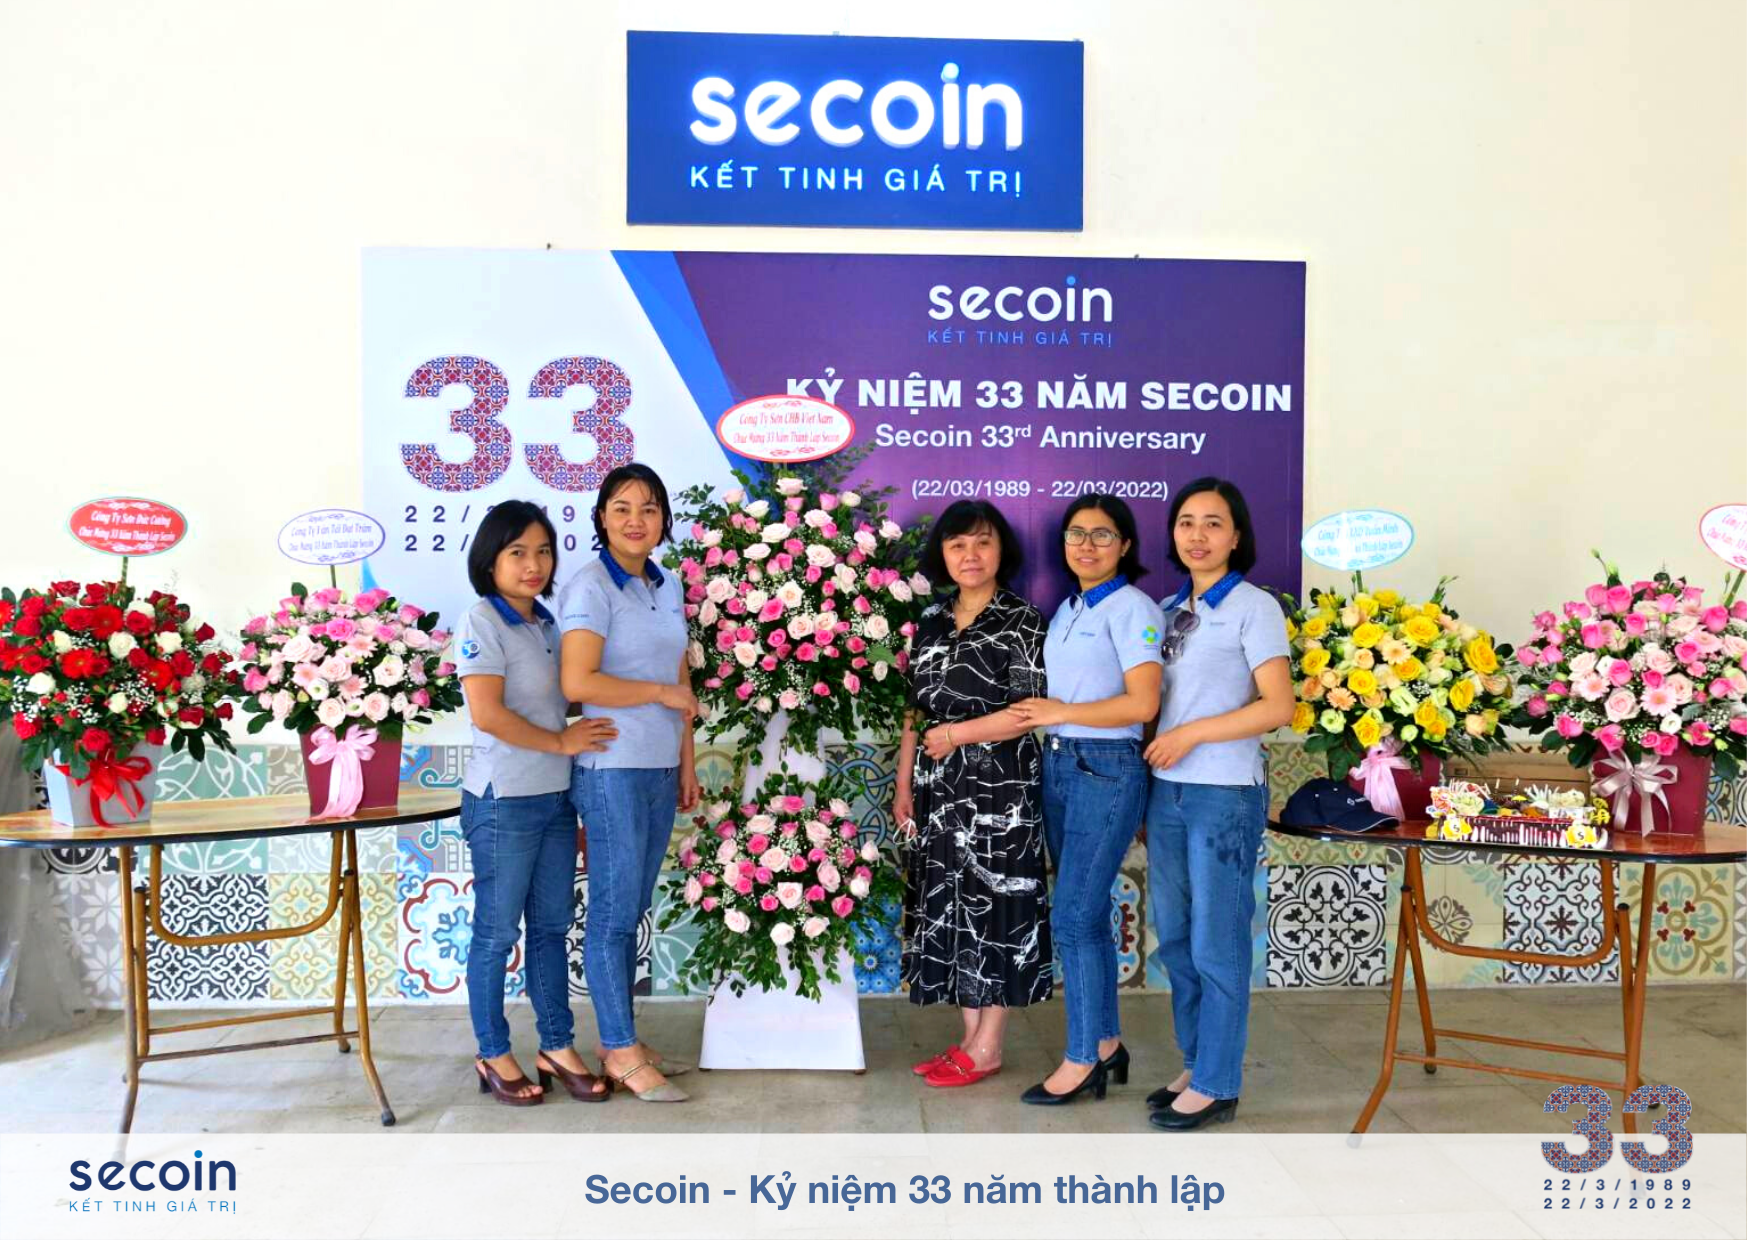 Secoin - Kỷ niệm 33 năm thành lập